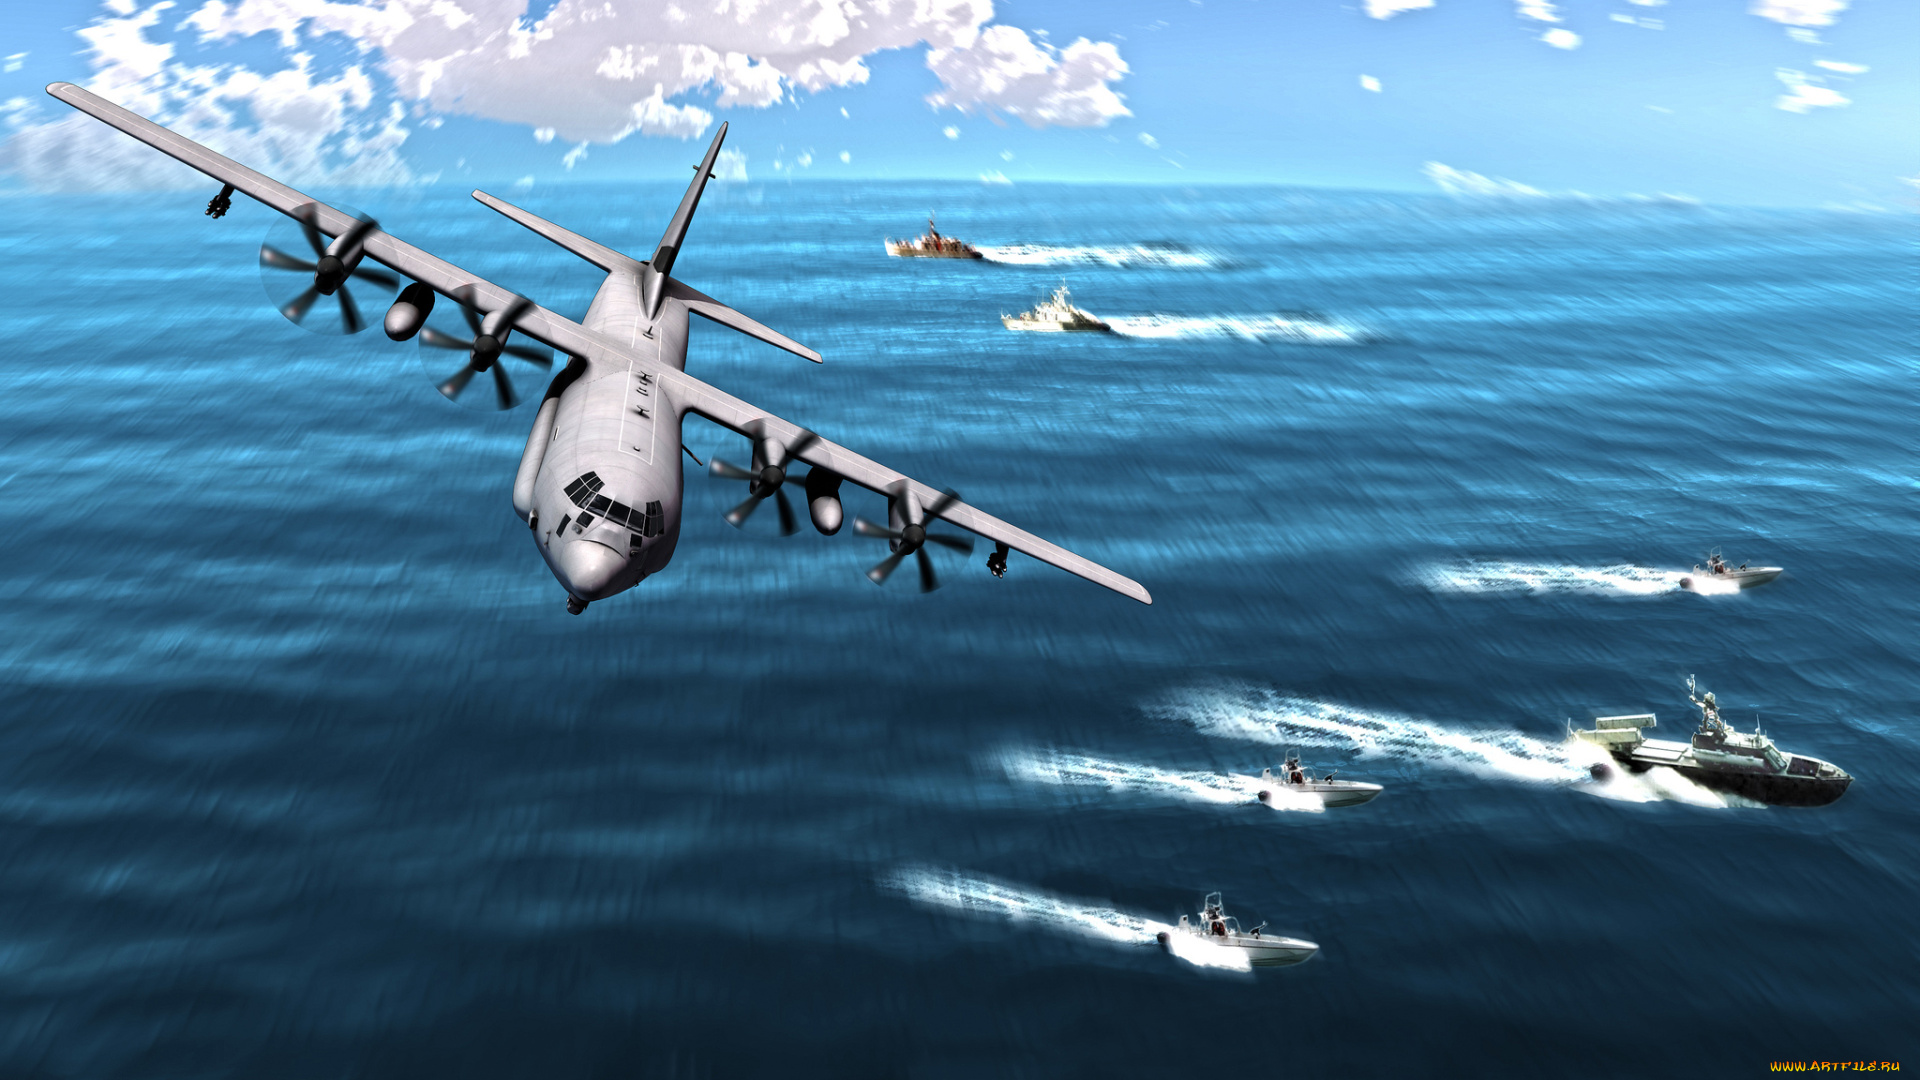 c-130, авиация, 3д, рисованые, v-graphic, океан, полет, самолет, транспортный, корабли